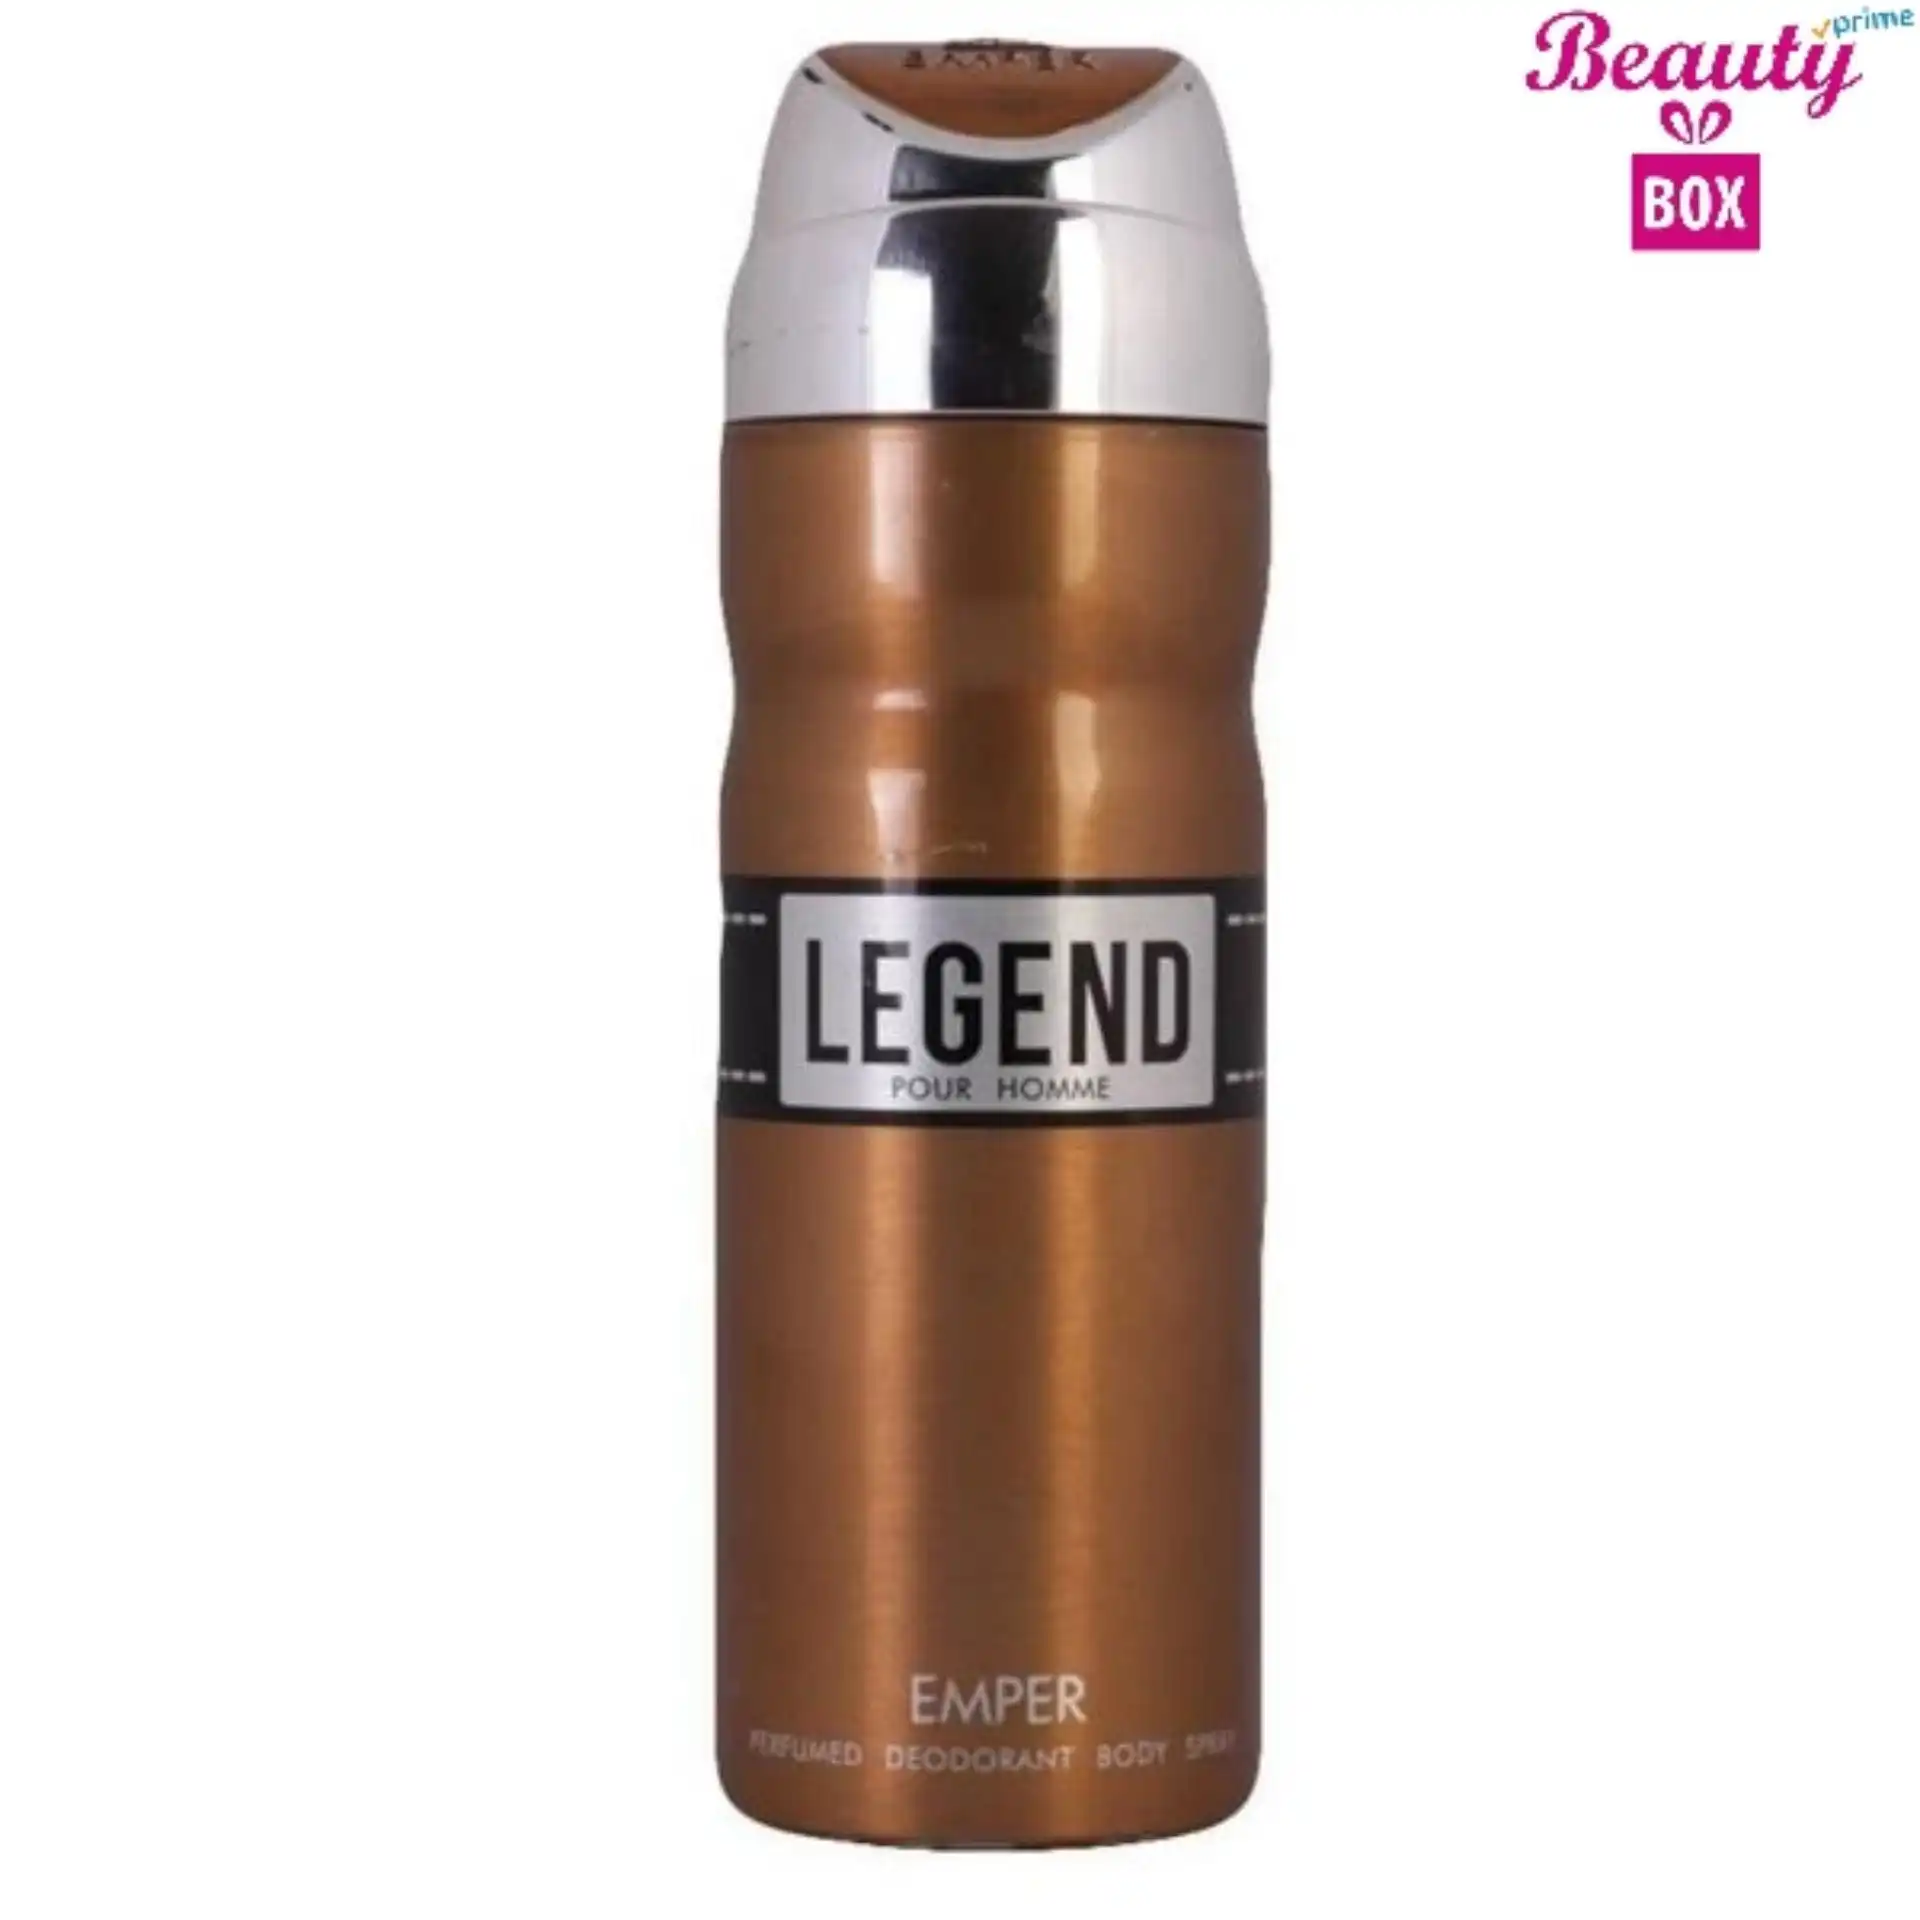 Emper Legend Homme Body Spray For Men - 200Ml